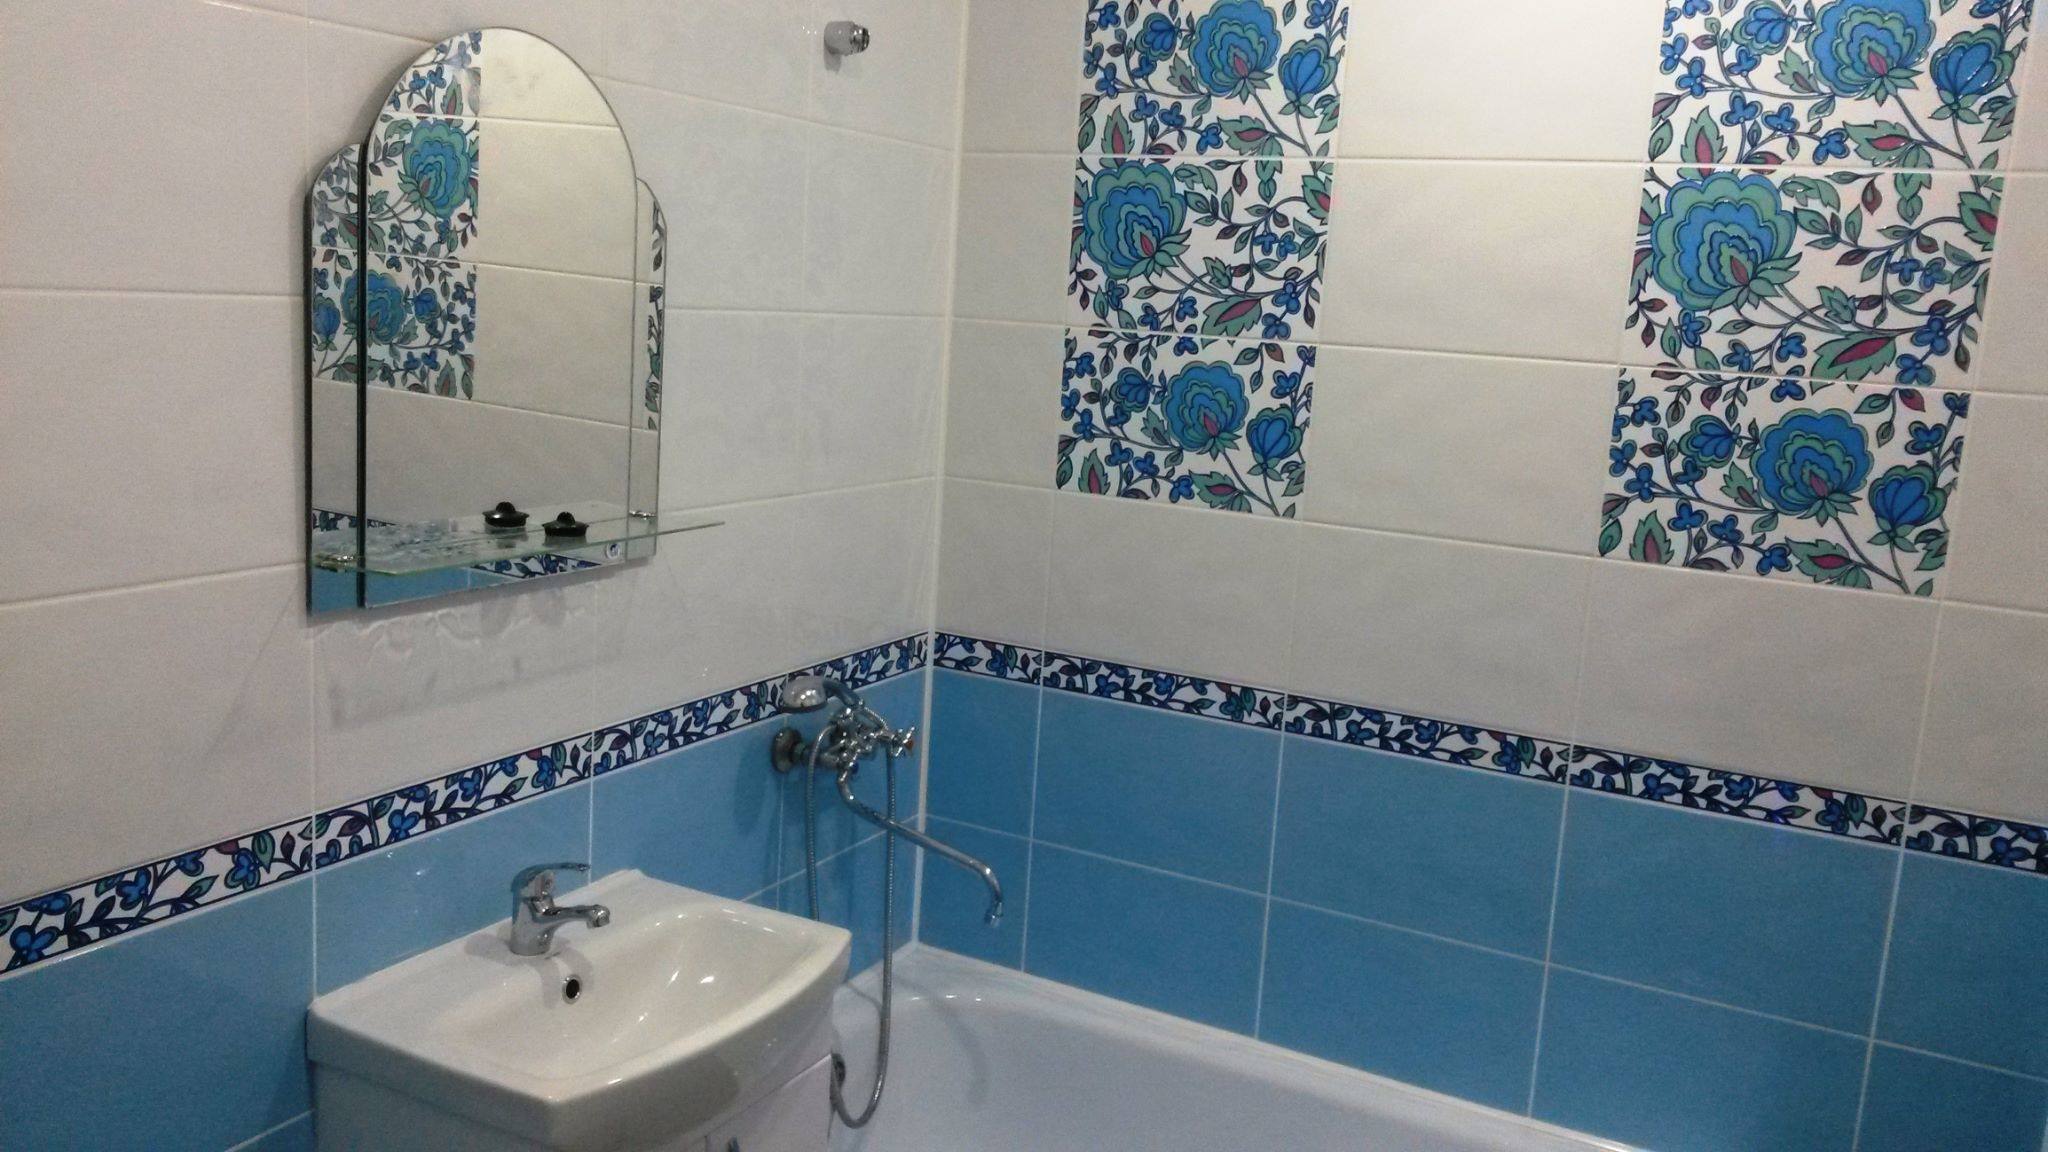 Дизайн синей ванной комнаты: 100+ реальных фото примеров и основные моменты оформления